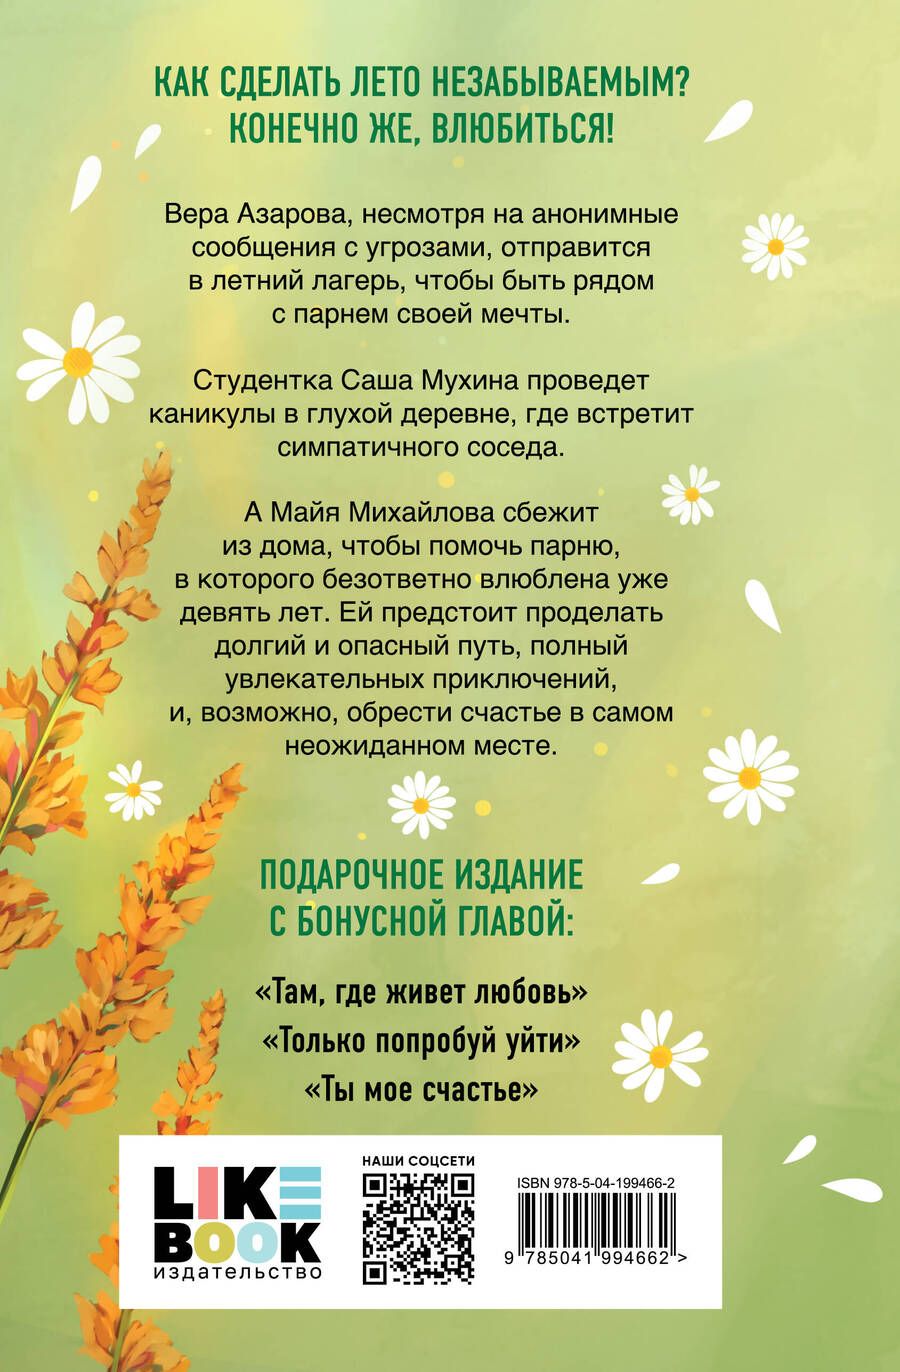 Обложка книги "Ася Лавринович: Летняя любовь: дачные истории"